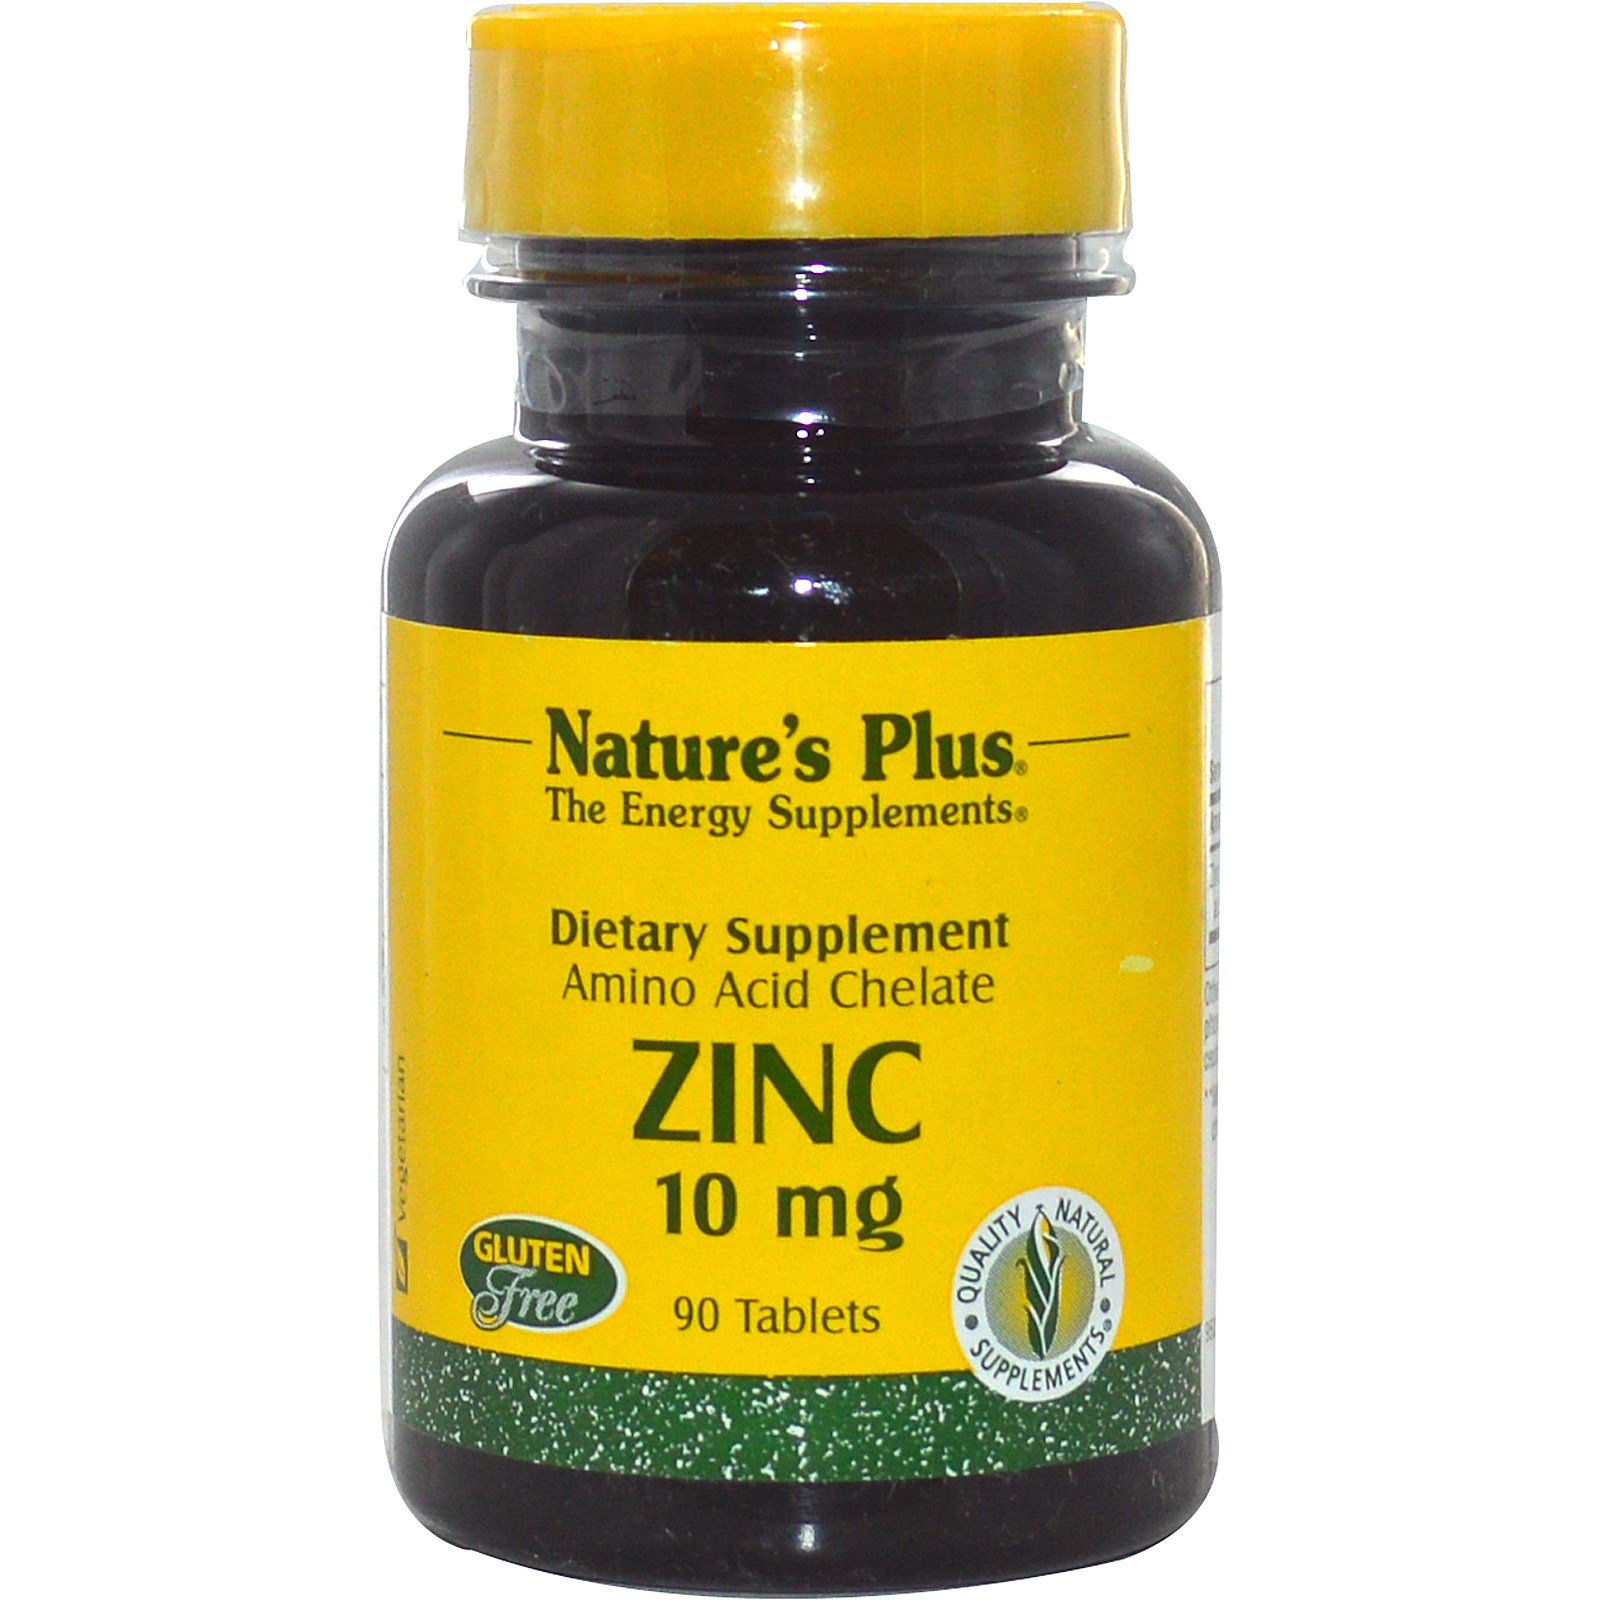 Nature's Plus Zinc, 10 mg (90 Tablets) - 